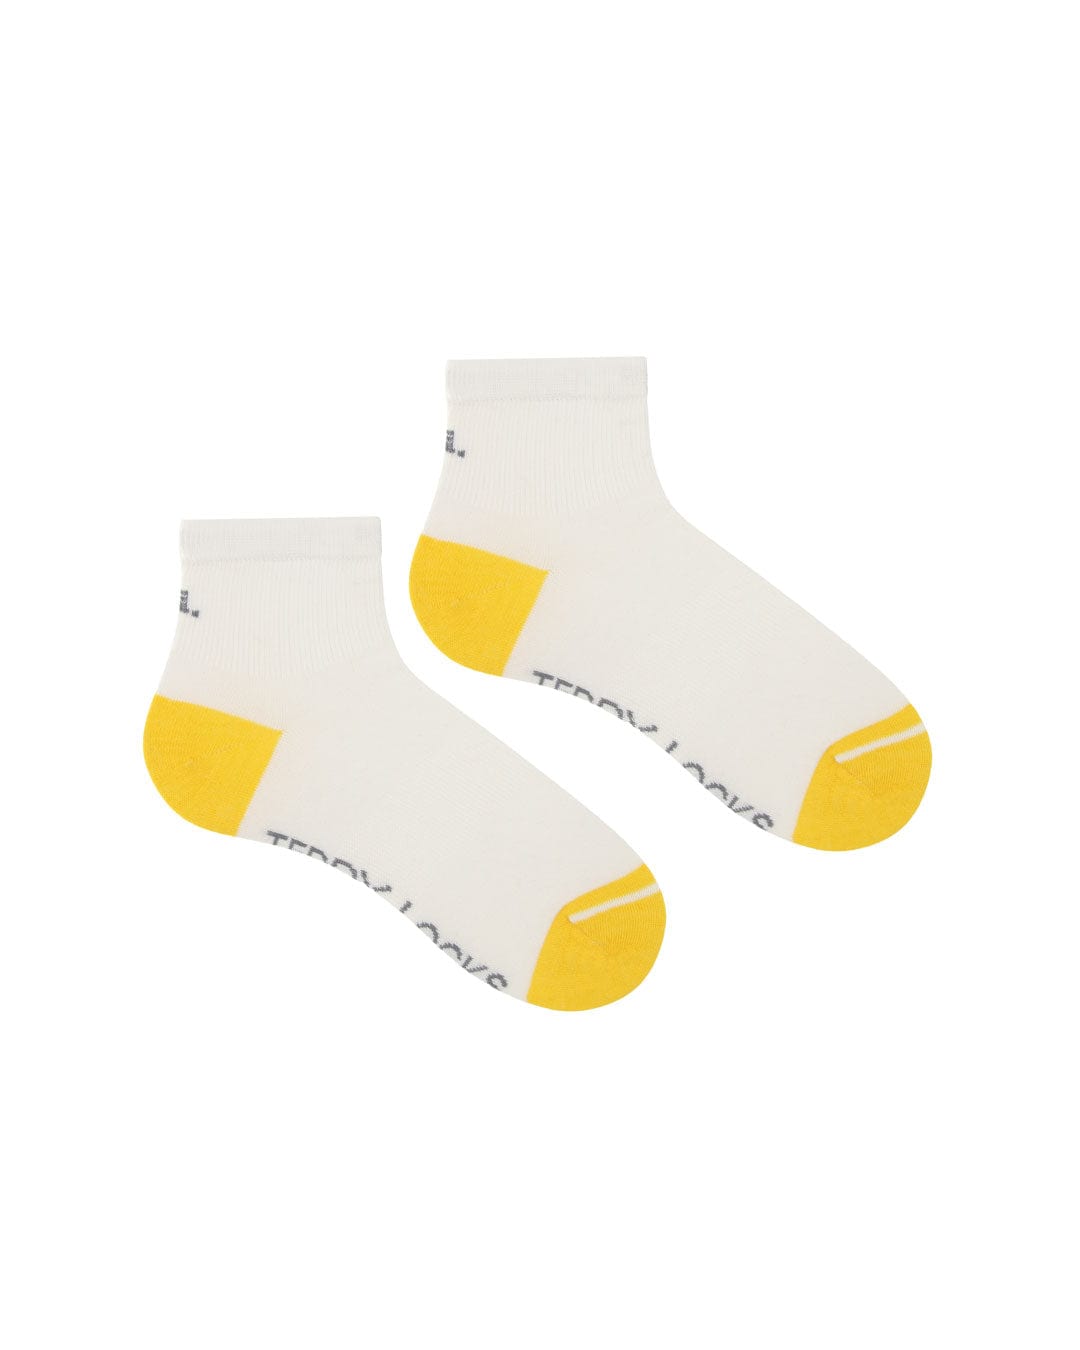 Ecofriendly white quarter length socks. Sustainable mens socks designed in the UK